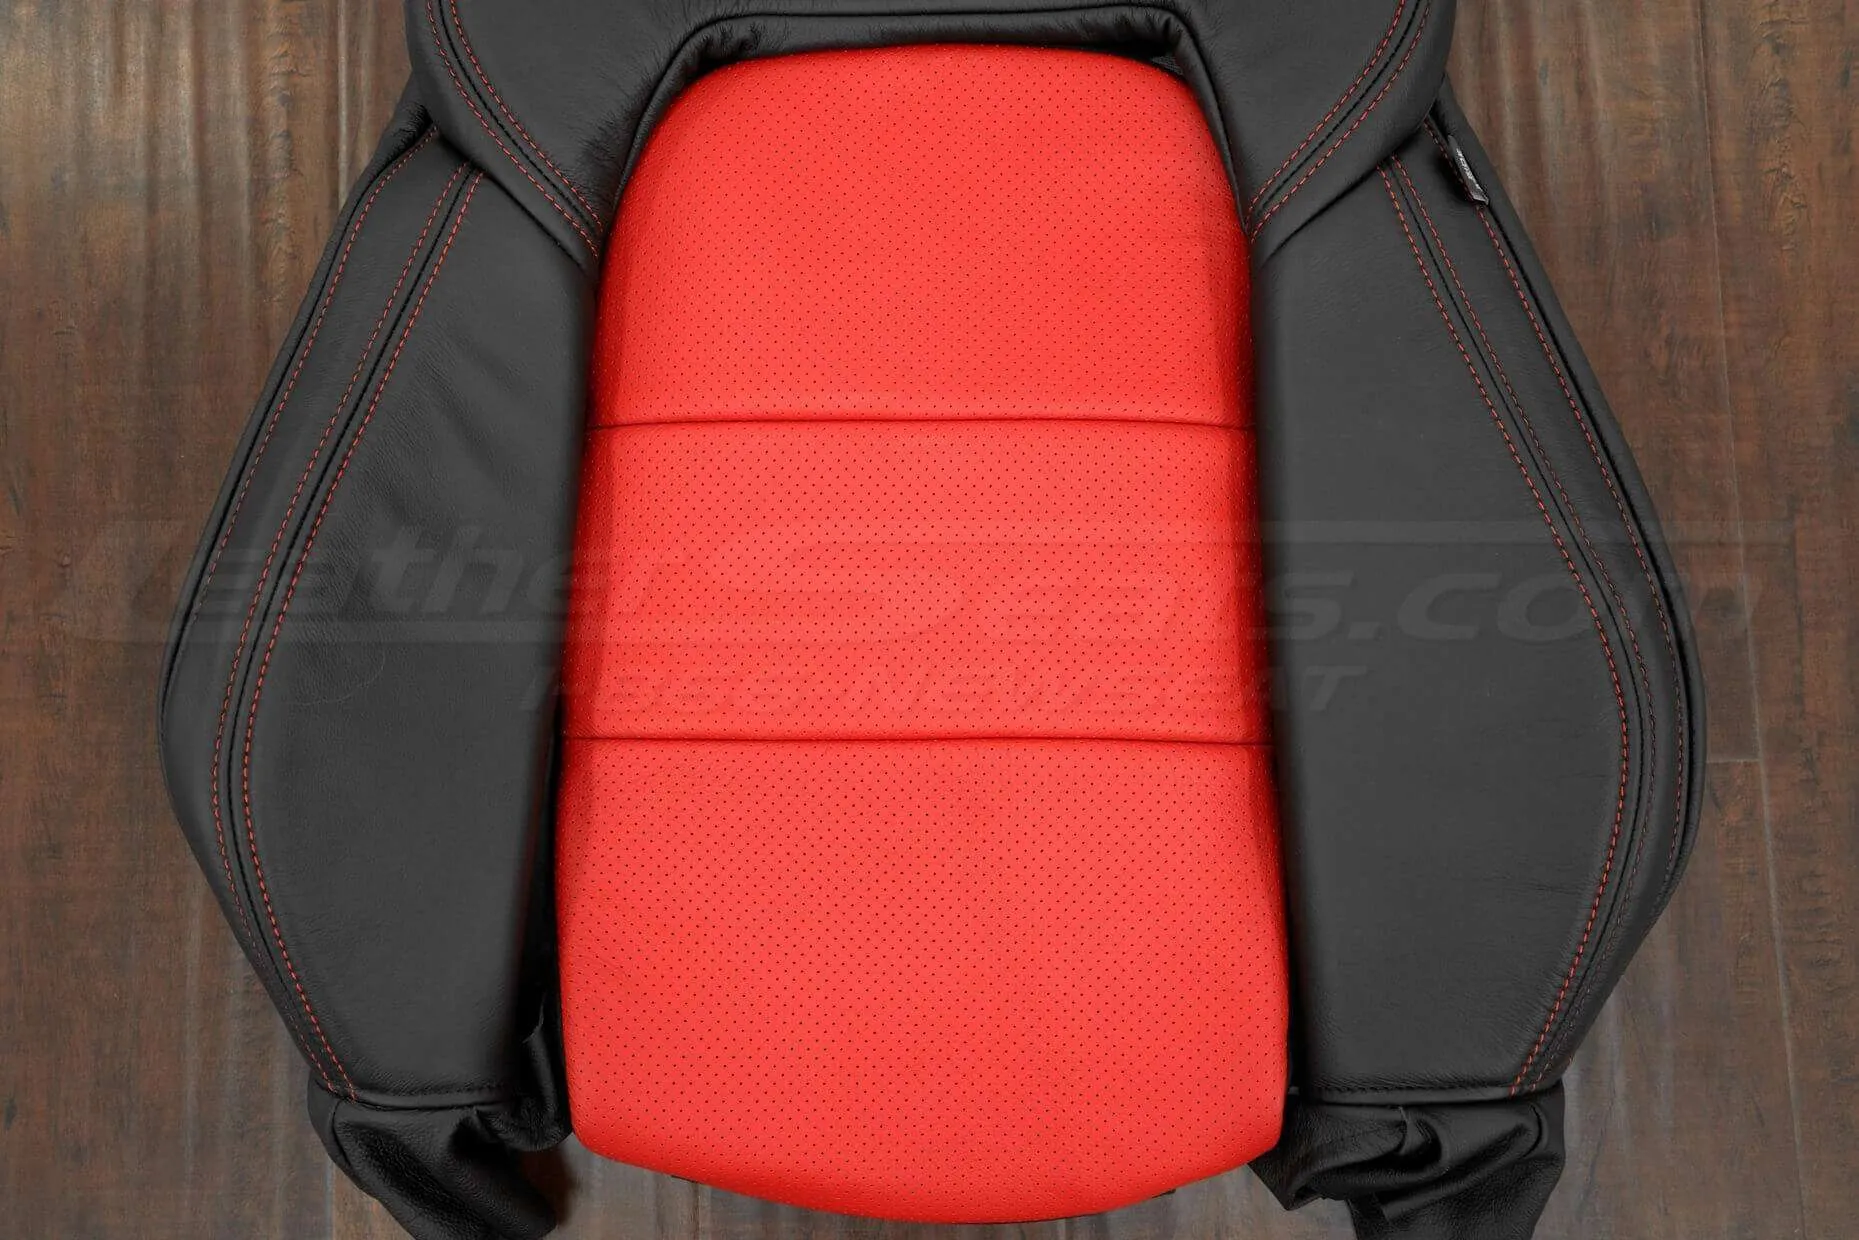 05-13 Chevrolet Corvette Upholstery Kit - Black & Bright Red - Perforated insert and Bolster